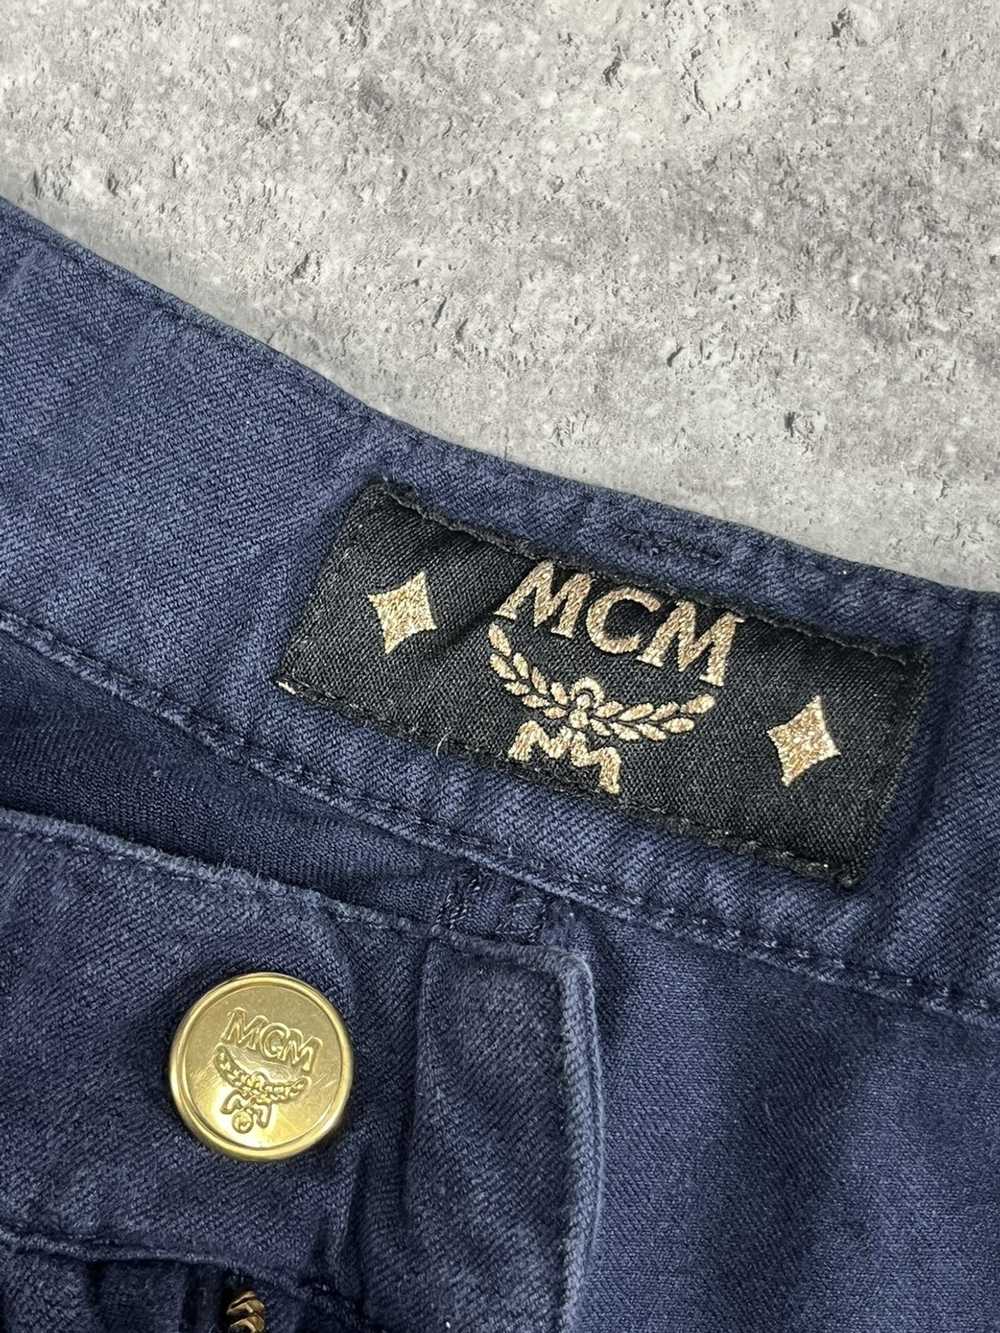 Designer × MCM × Vintage MCM navy jeans vintage 9… - image 5